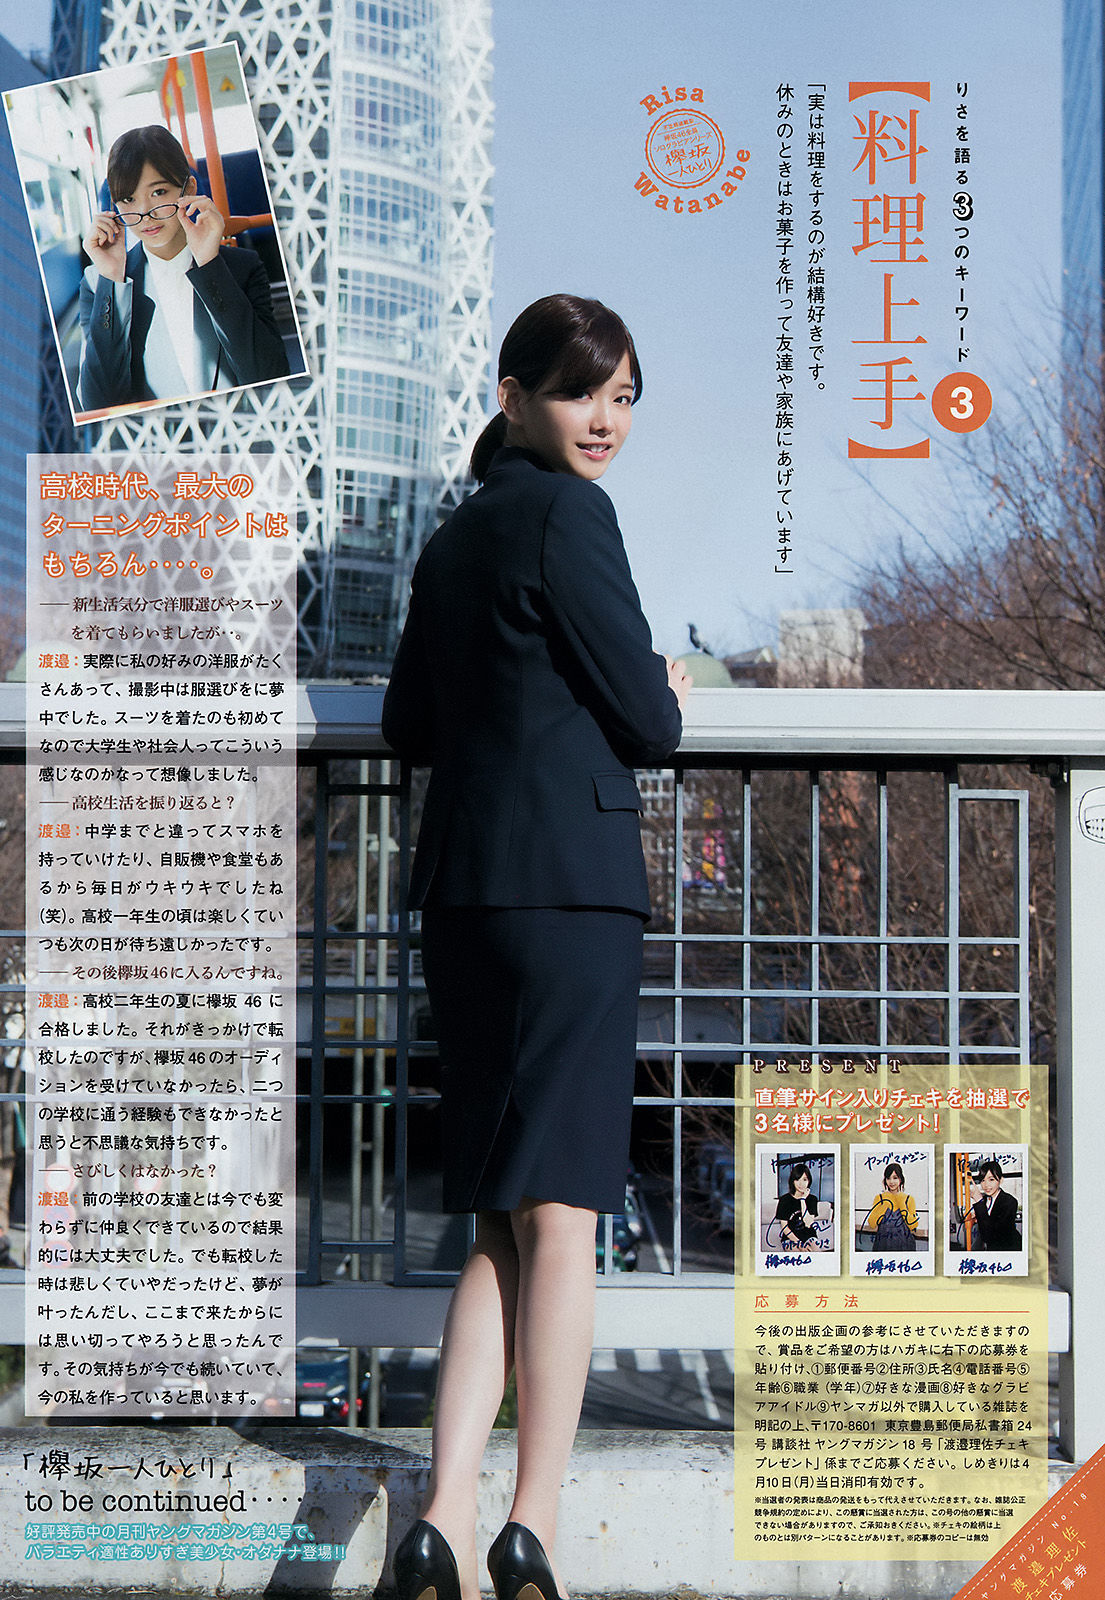 [Revista Joven] Misa Eto Risa Watanabe 2017 No.18 Fotografía Página 11 No.860b73